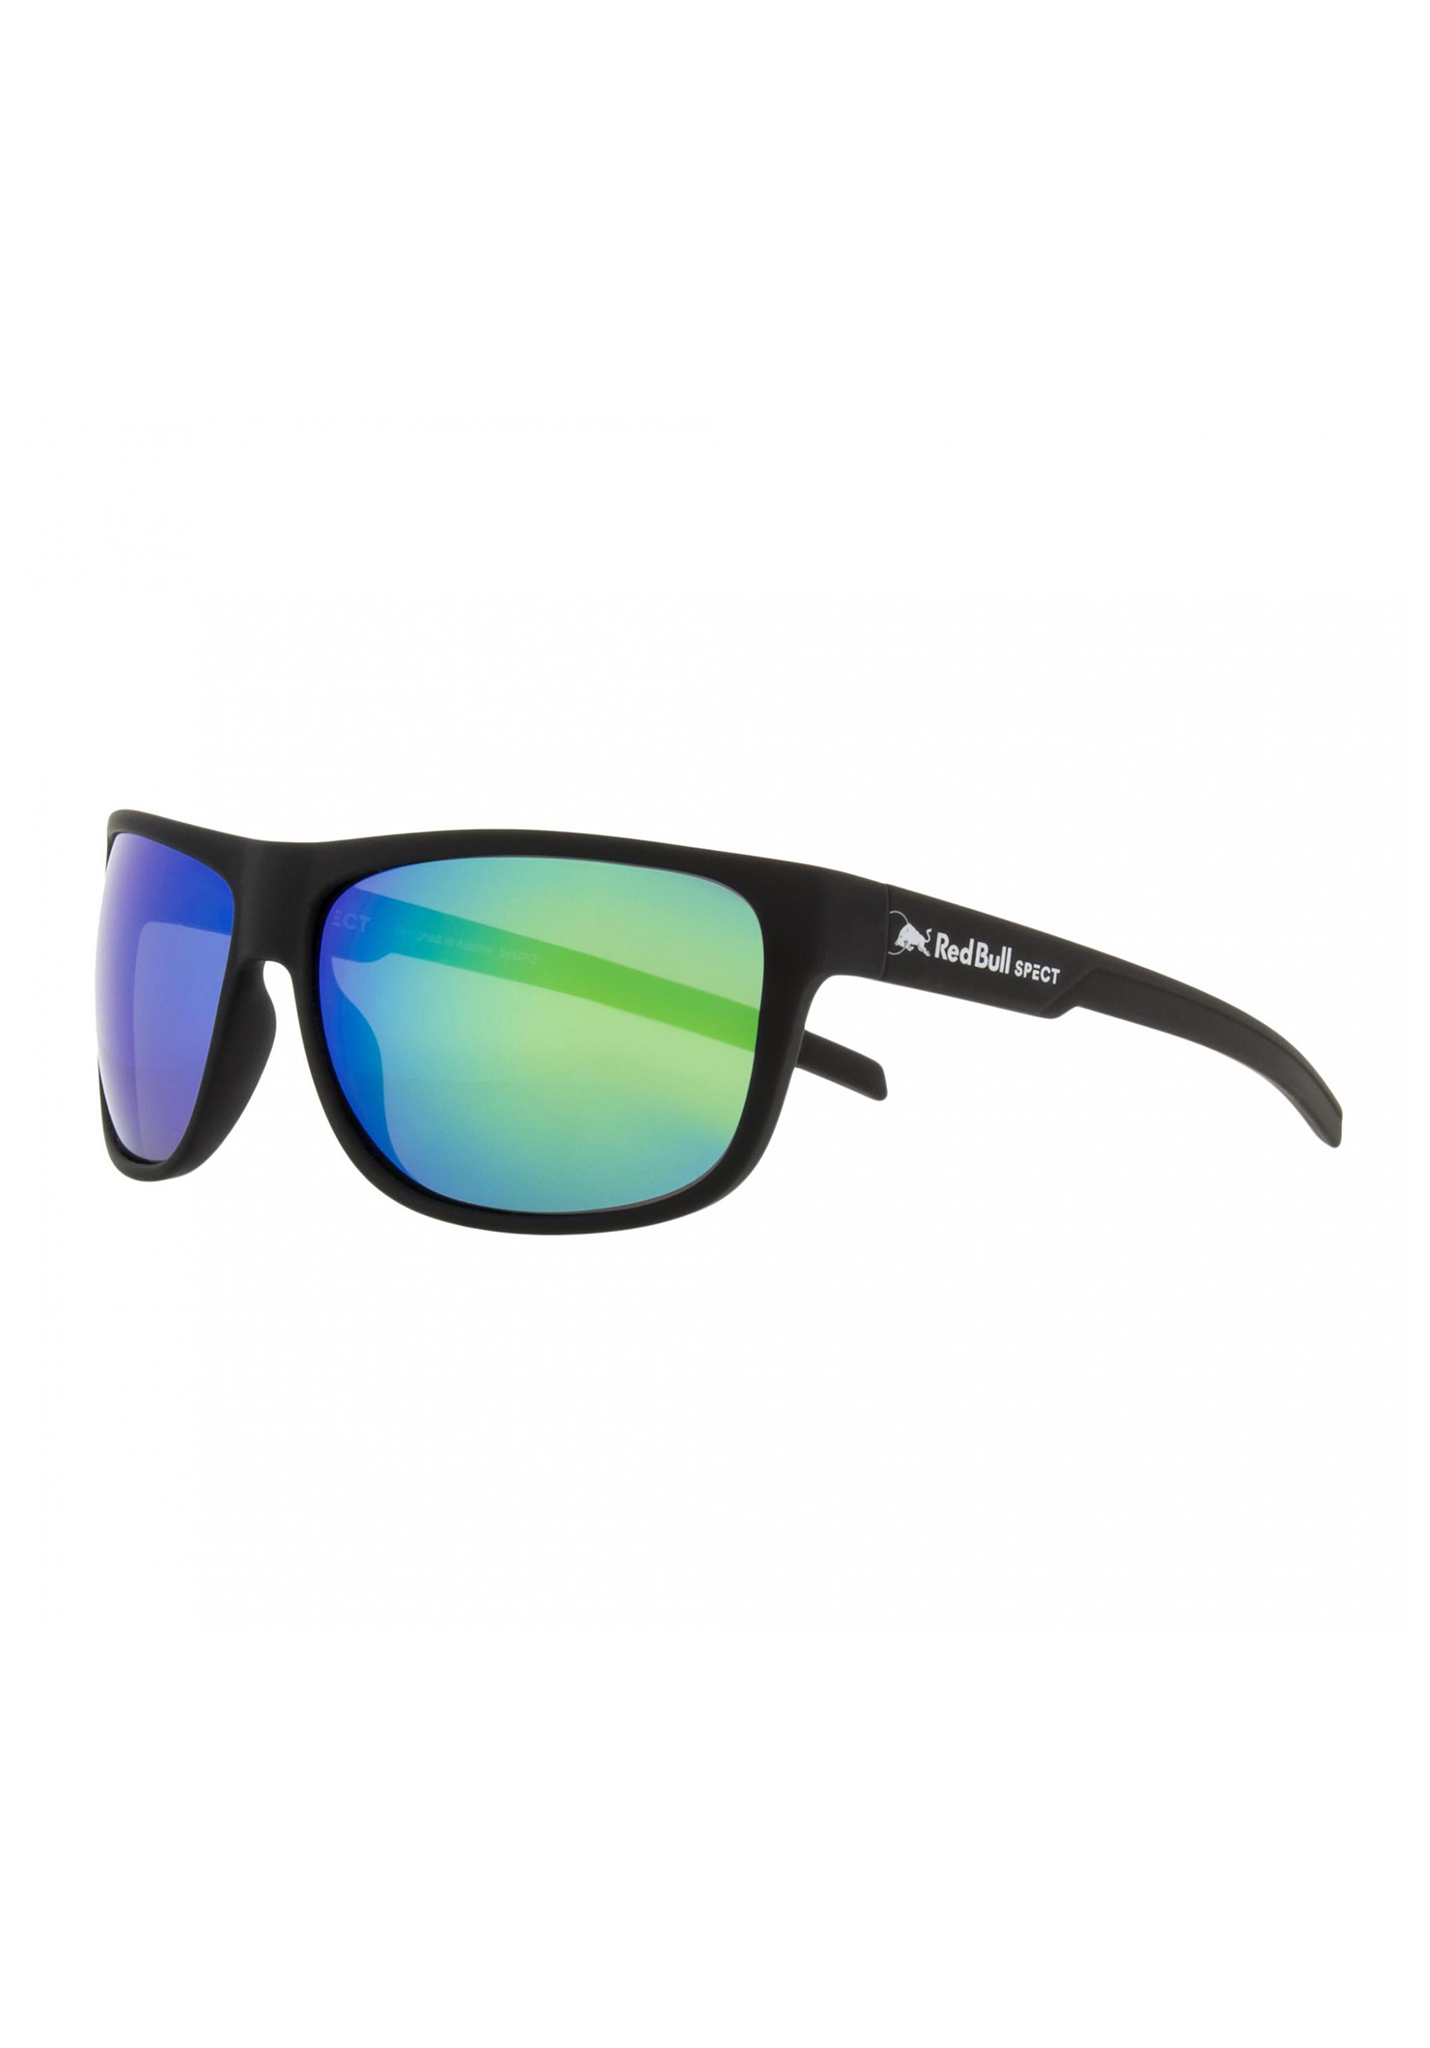 Red Bull SPECT Eyewear Loom Sonnenbrillen schwarz/rauch mit grünem spiegel pol One Size